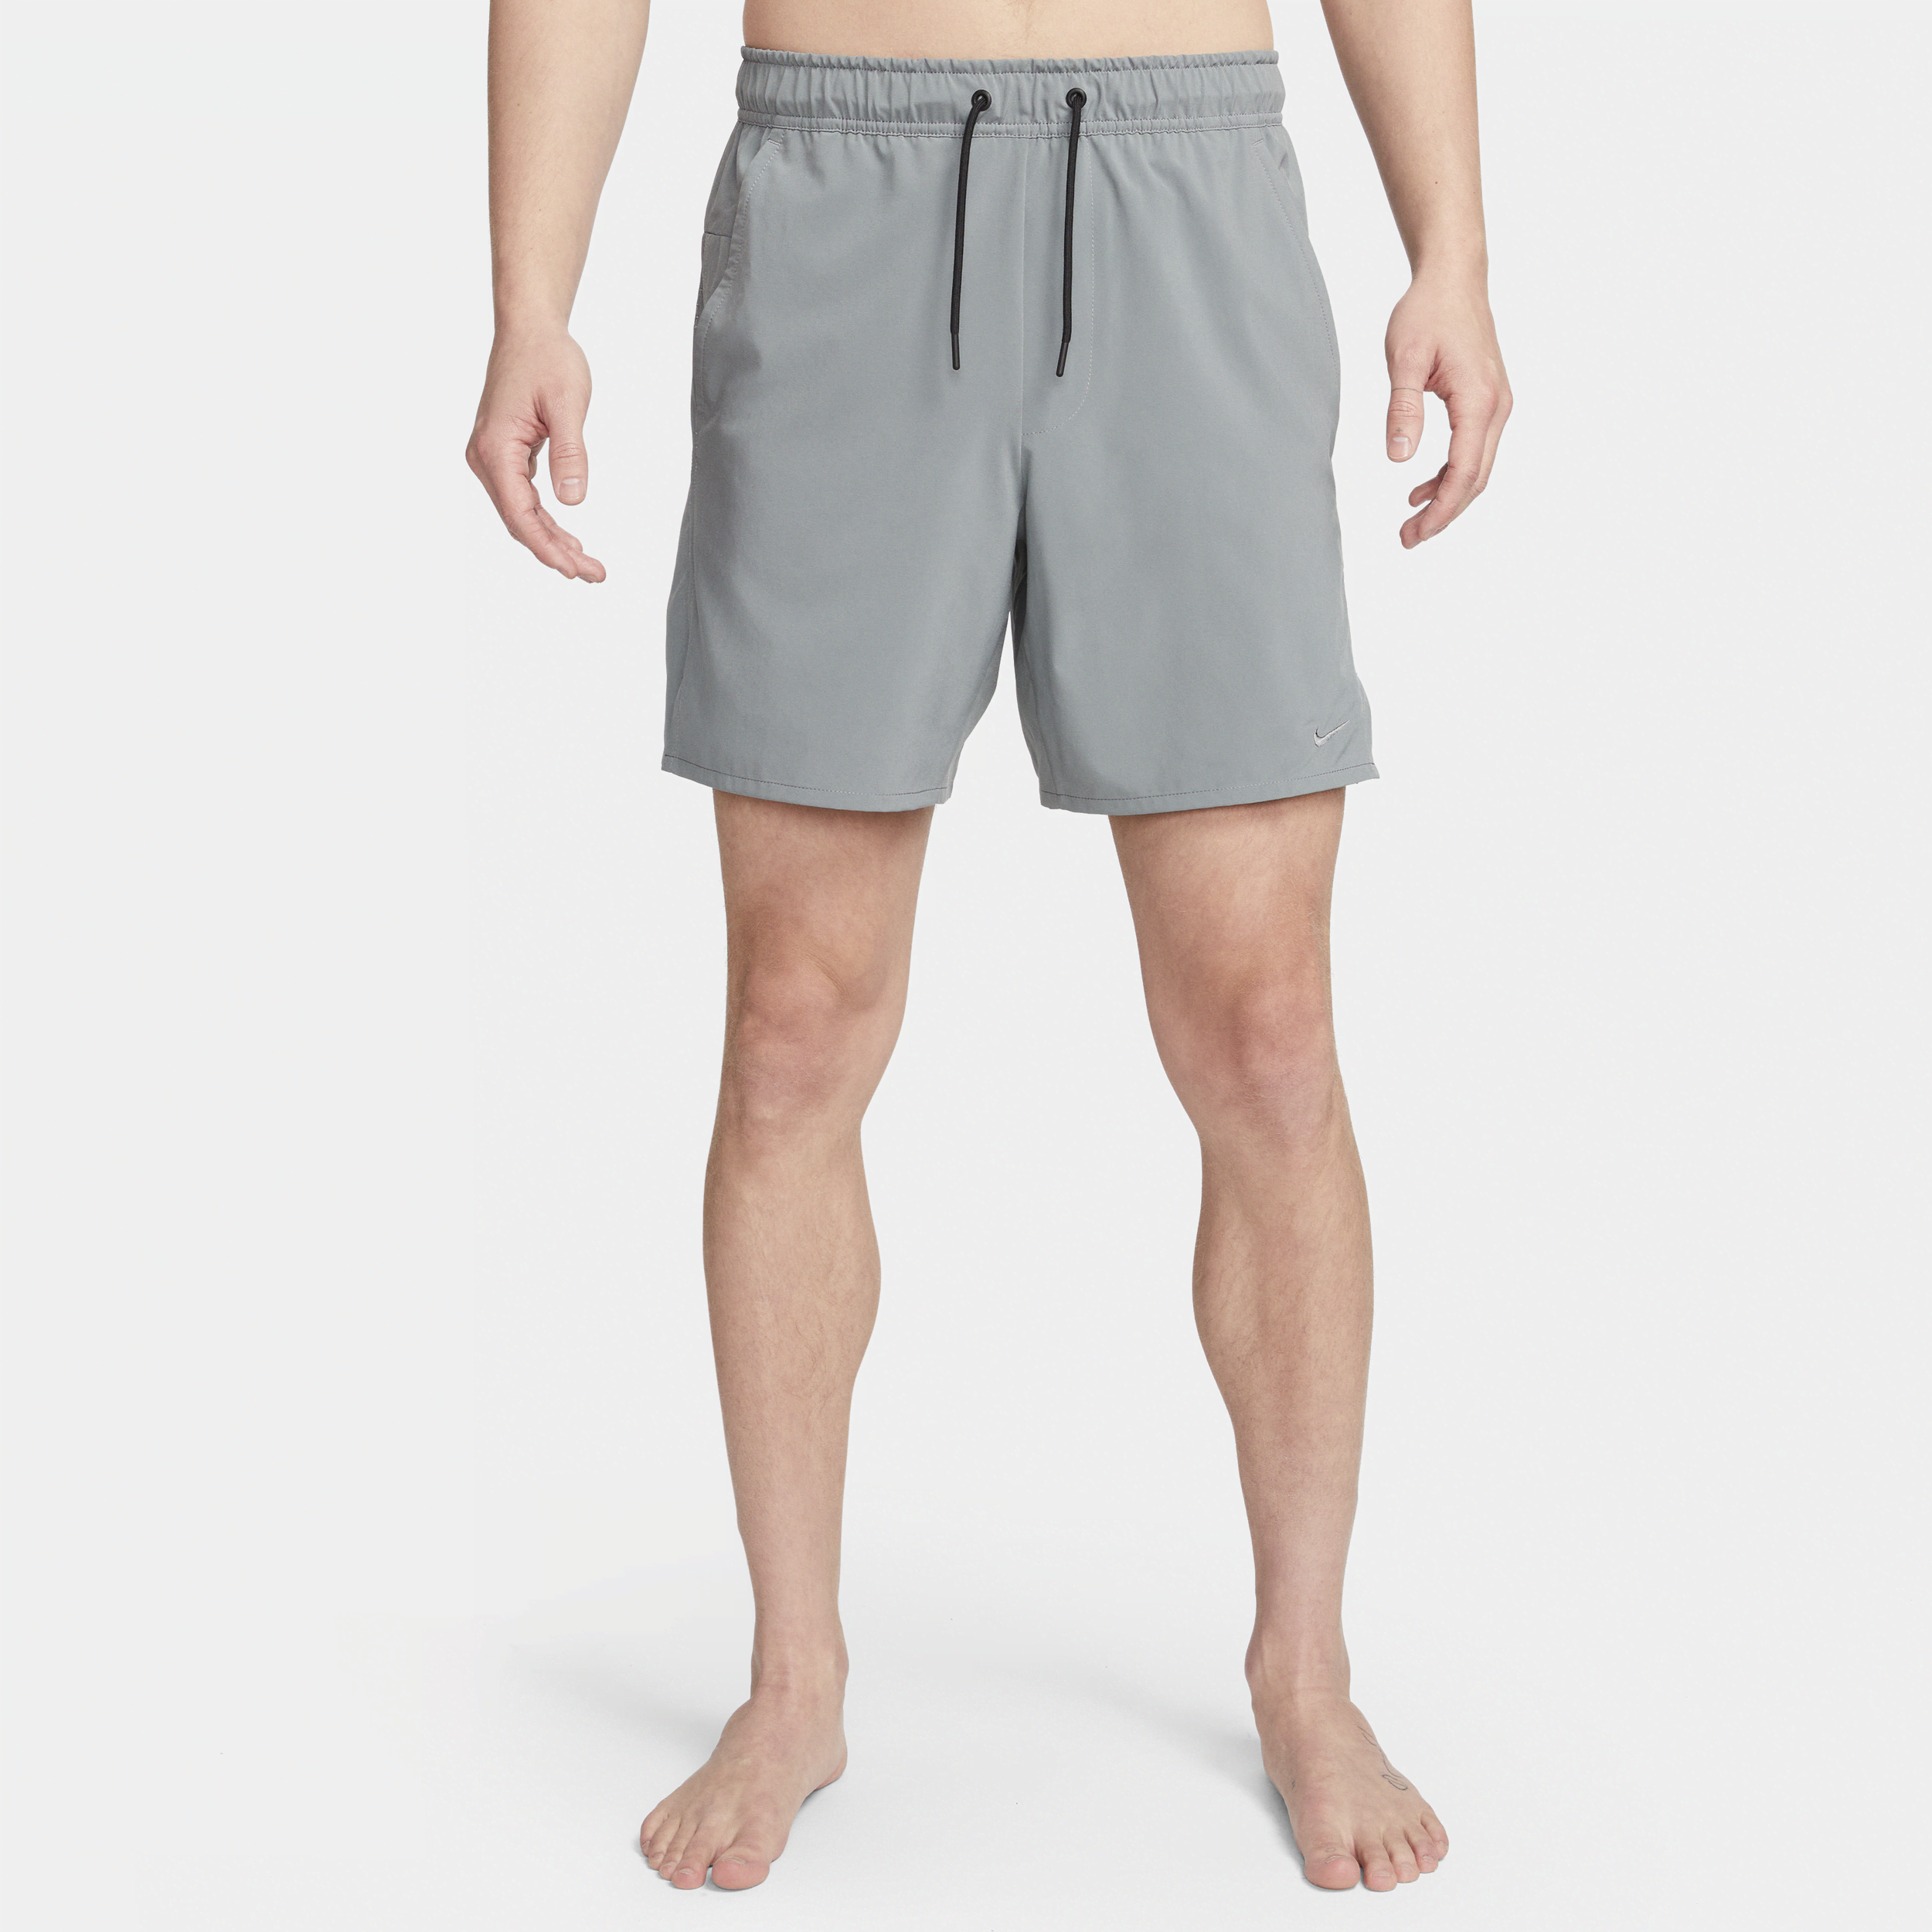 Nike Unlimited Pantalón corto Dri-FIT versátil de 18 cm sin forro - Hombre - Gris